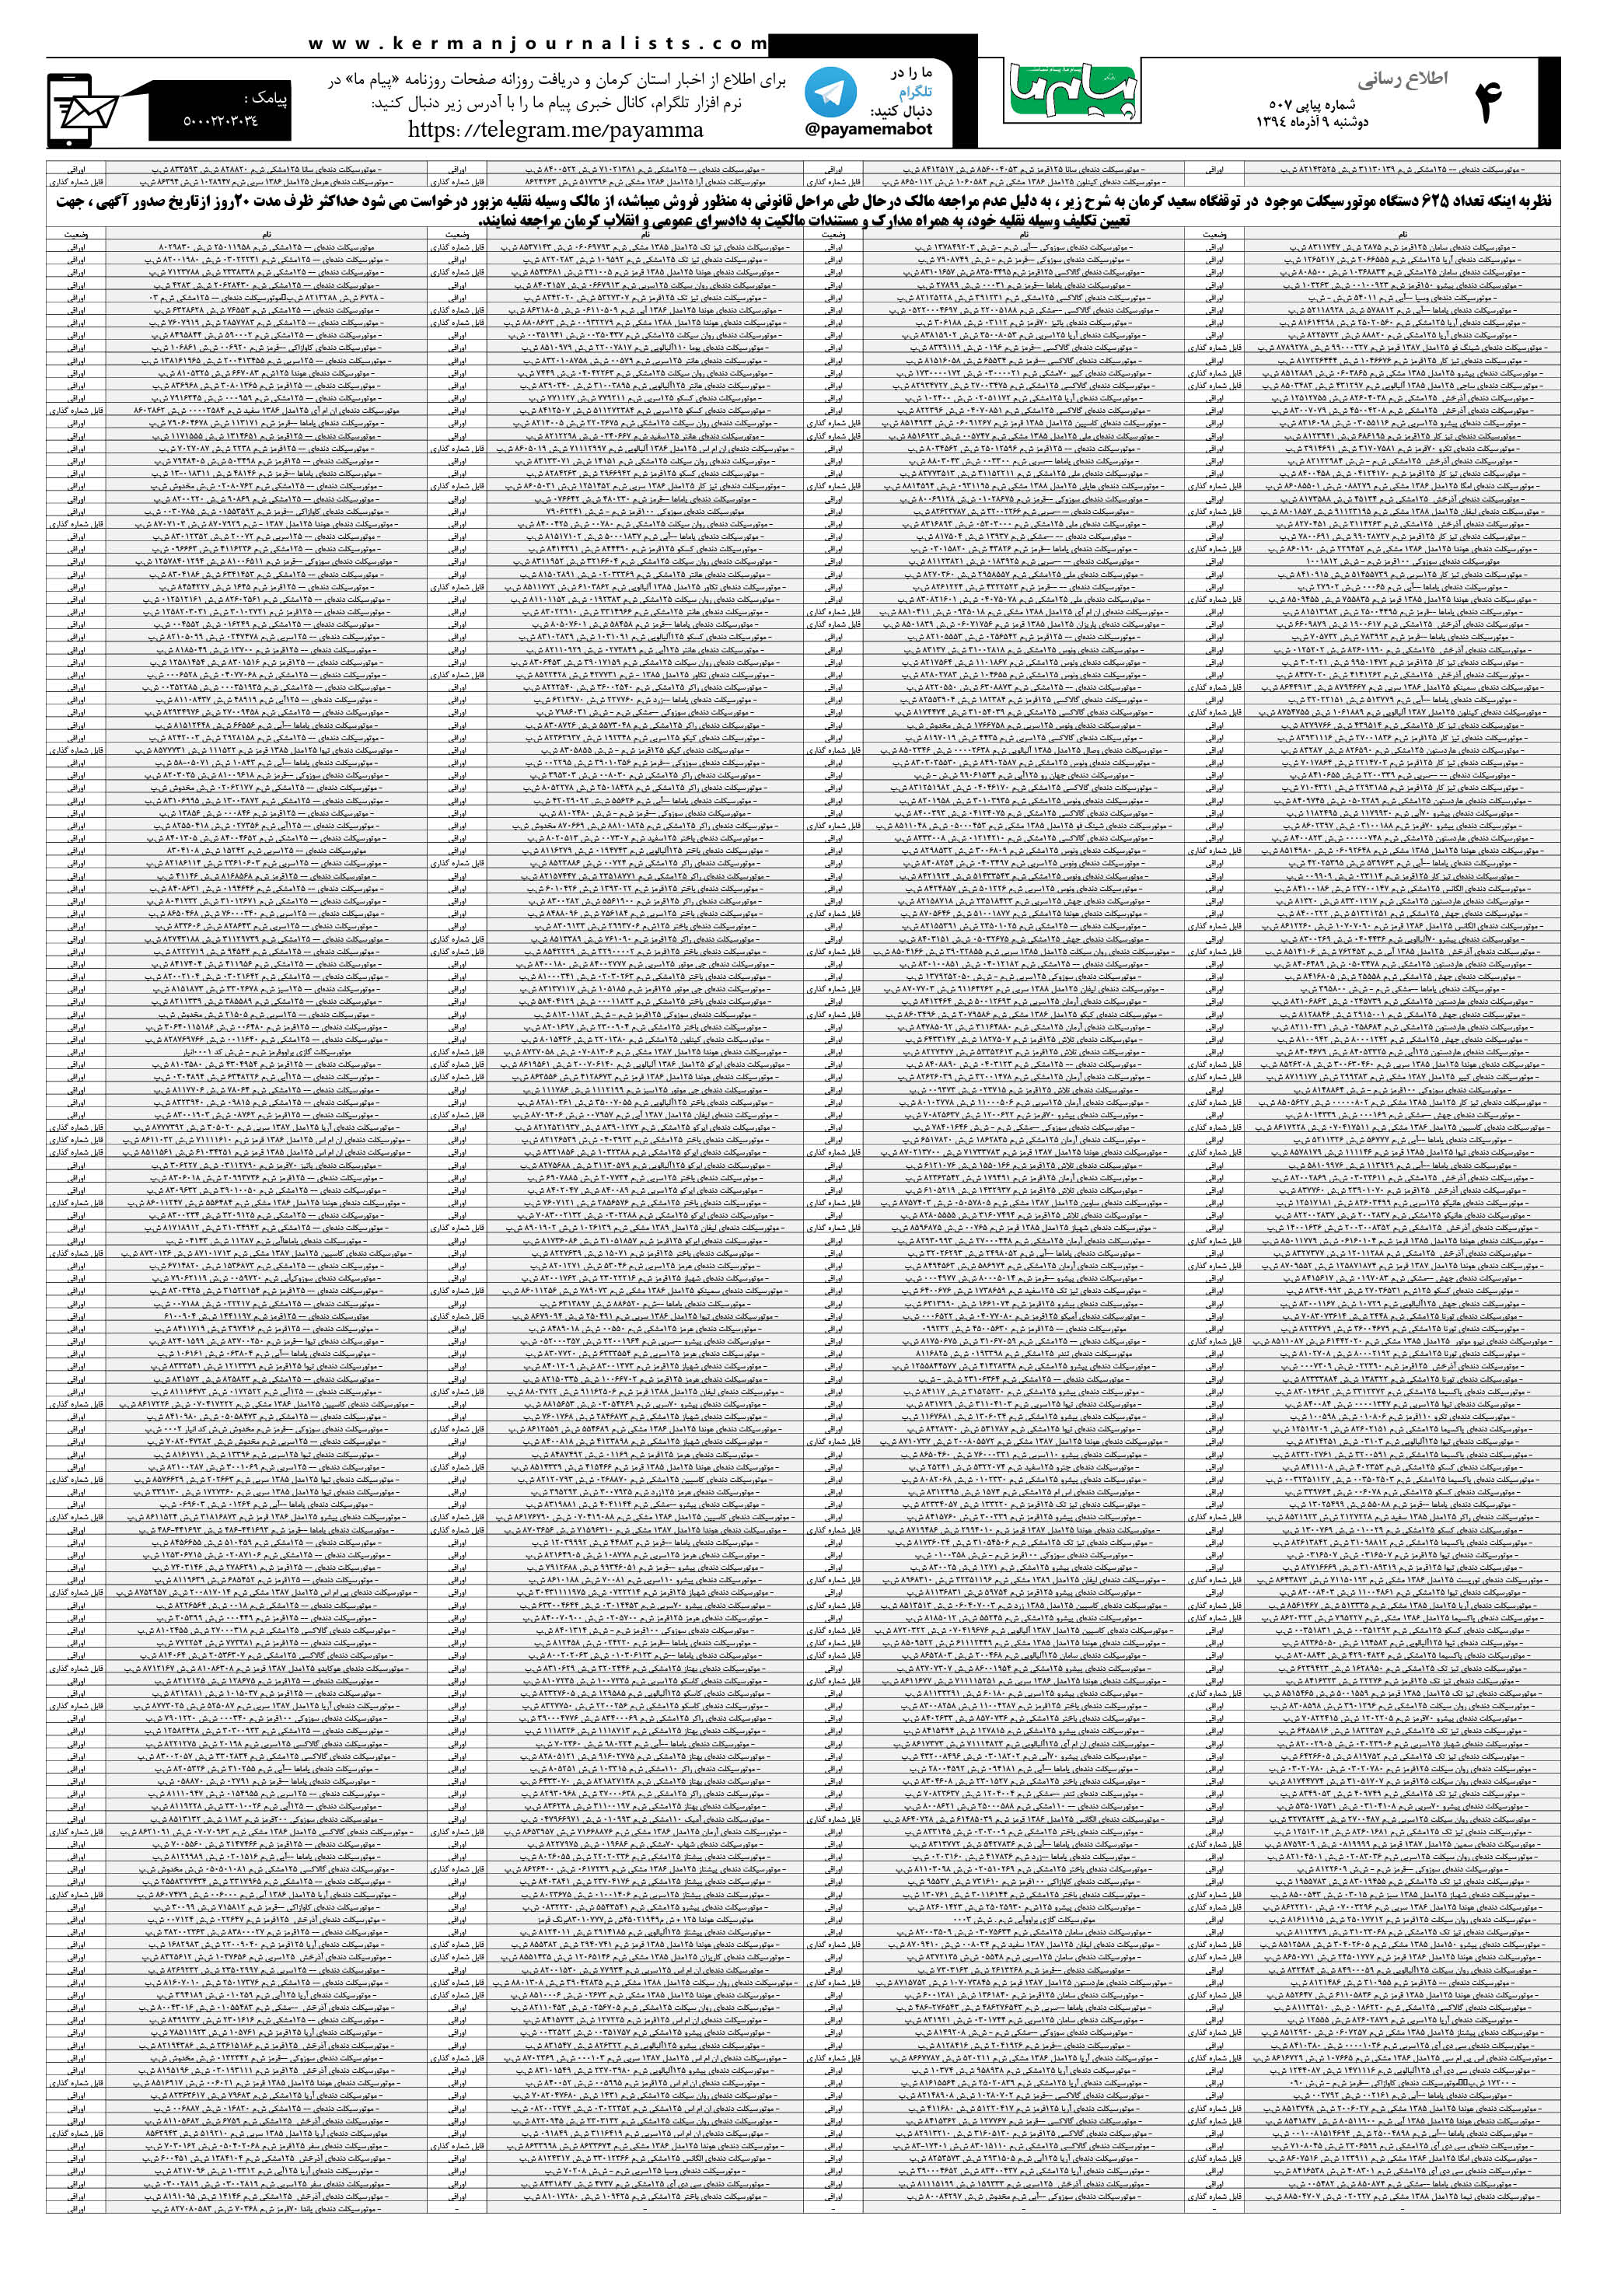 صفحه اطلاع رسانی(2) شماره 507 روزنامه پیام ما